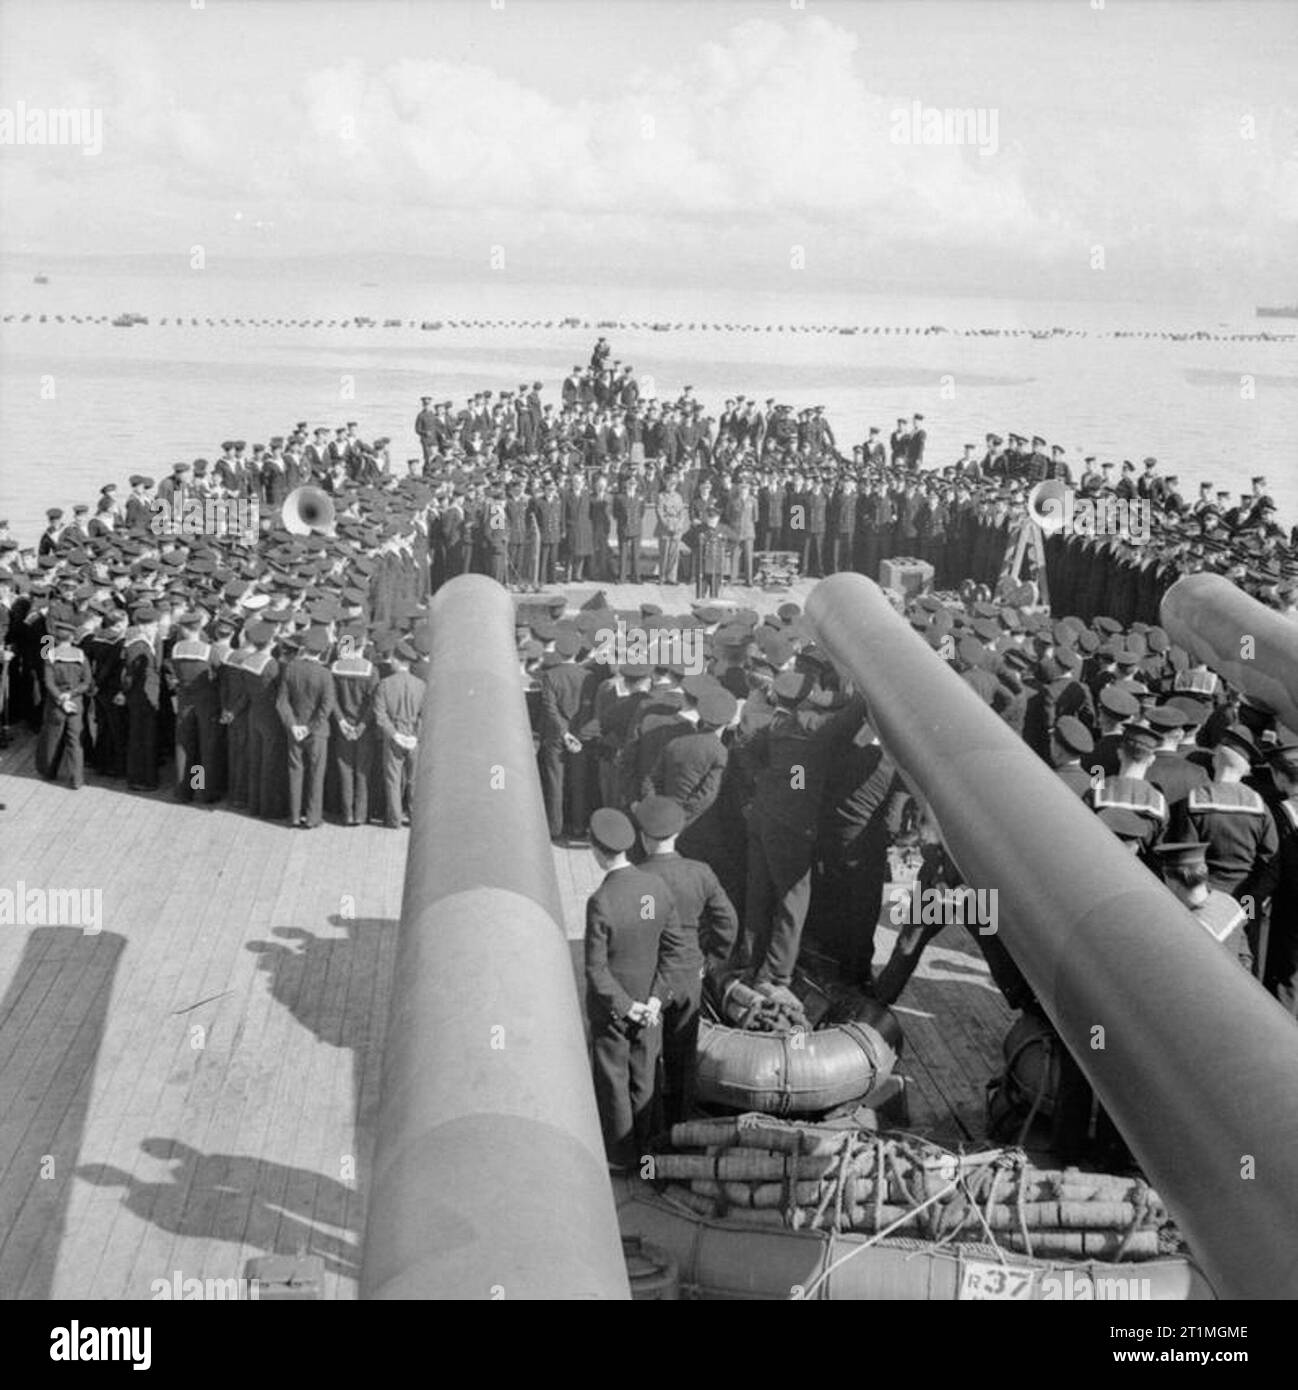 Winston Churchill pendant la Seconde Guerre mondiale, le Premier ministre britannique Winston Churchill traite de l'équipage du HMS PRINCE DE GALLES après le retour du navire au Royaume-Uni le 19 août 1941 à la suite de la Conférence de l'Atlantique avec le président américain Franklin D. Roosevelt à bord du USS Augusta. Banque D'Images